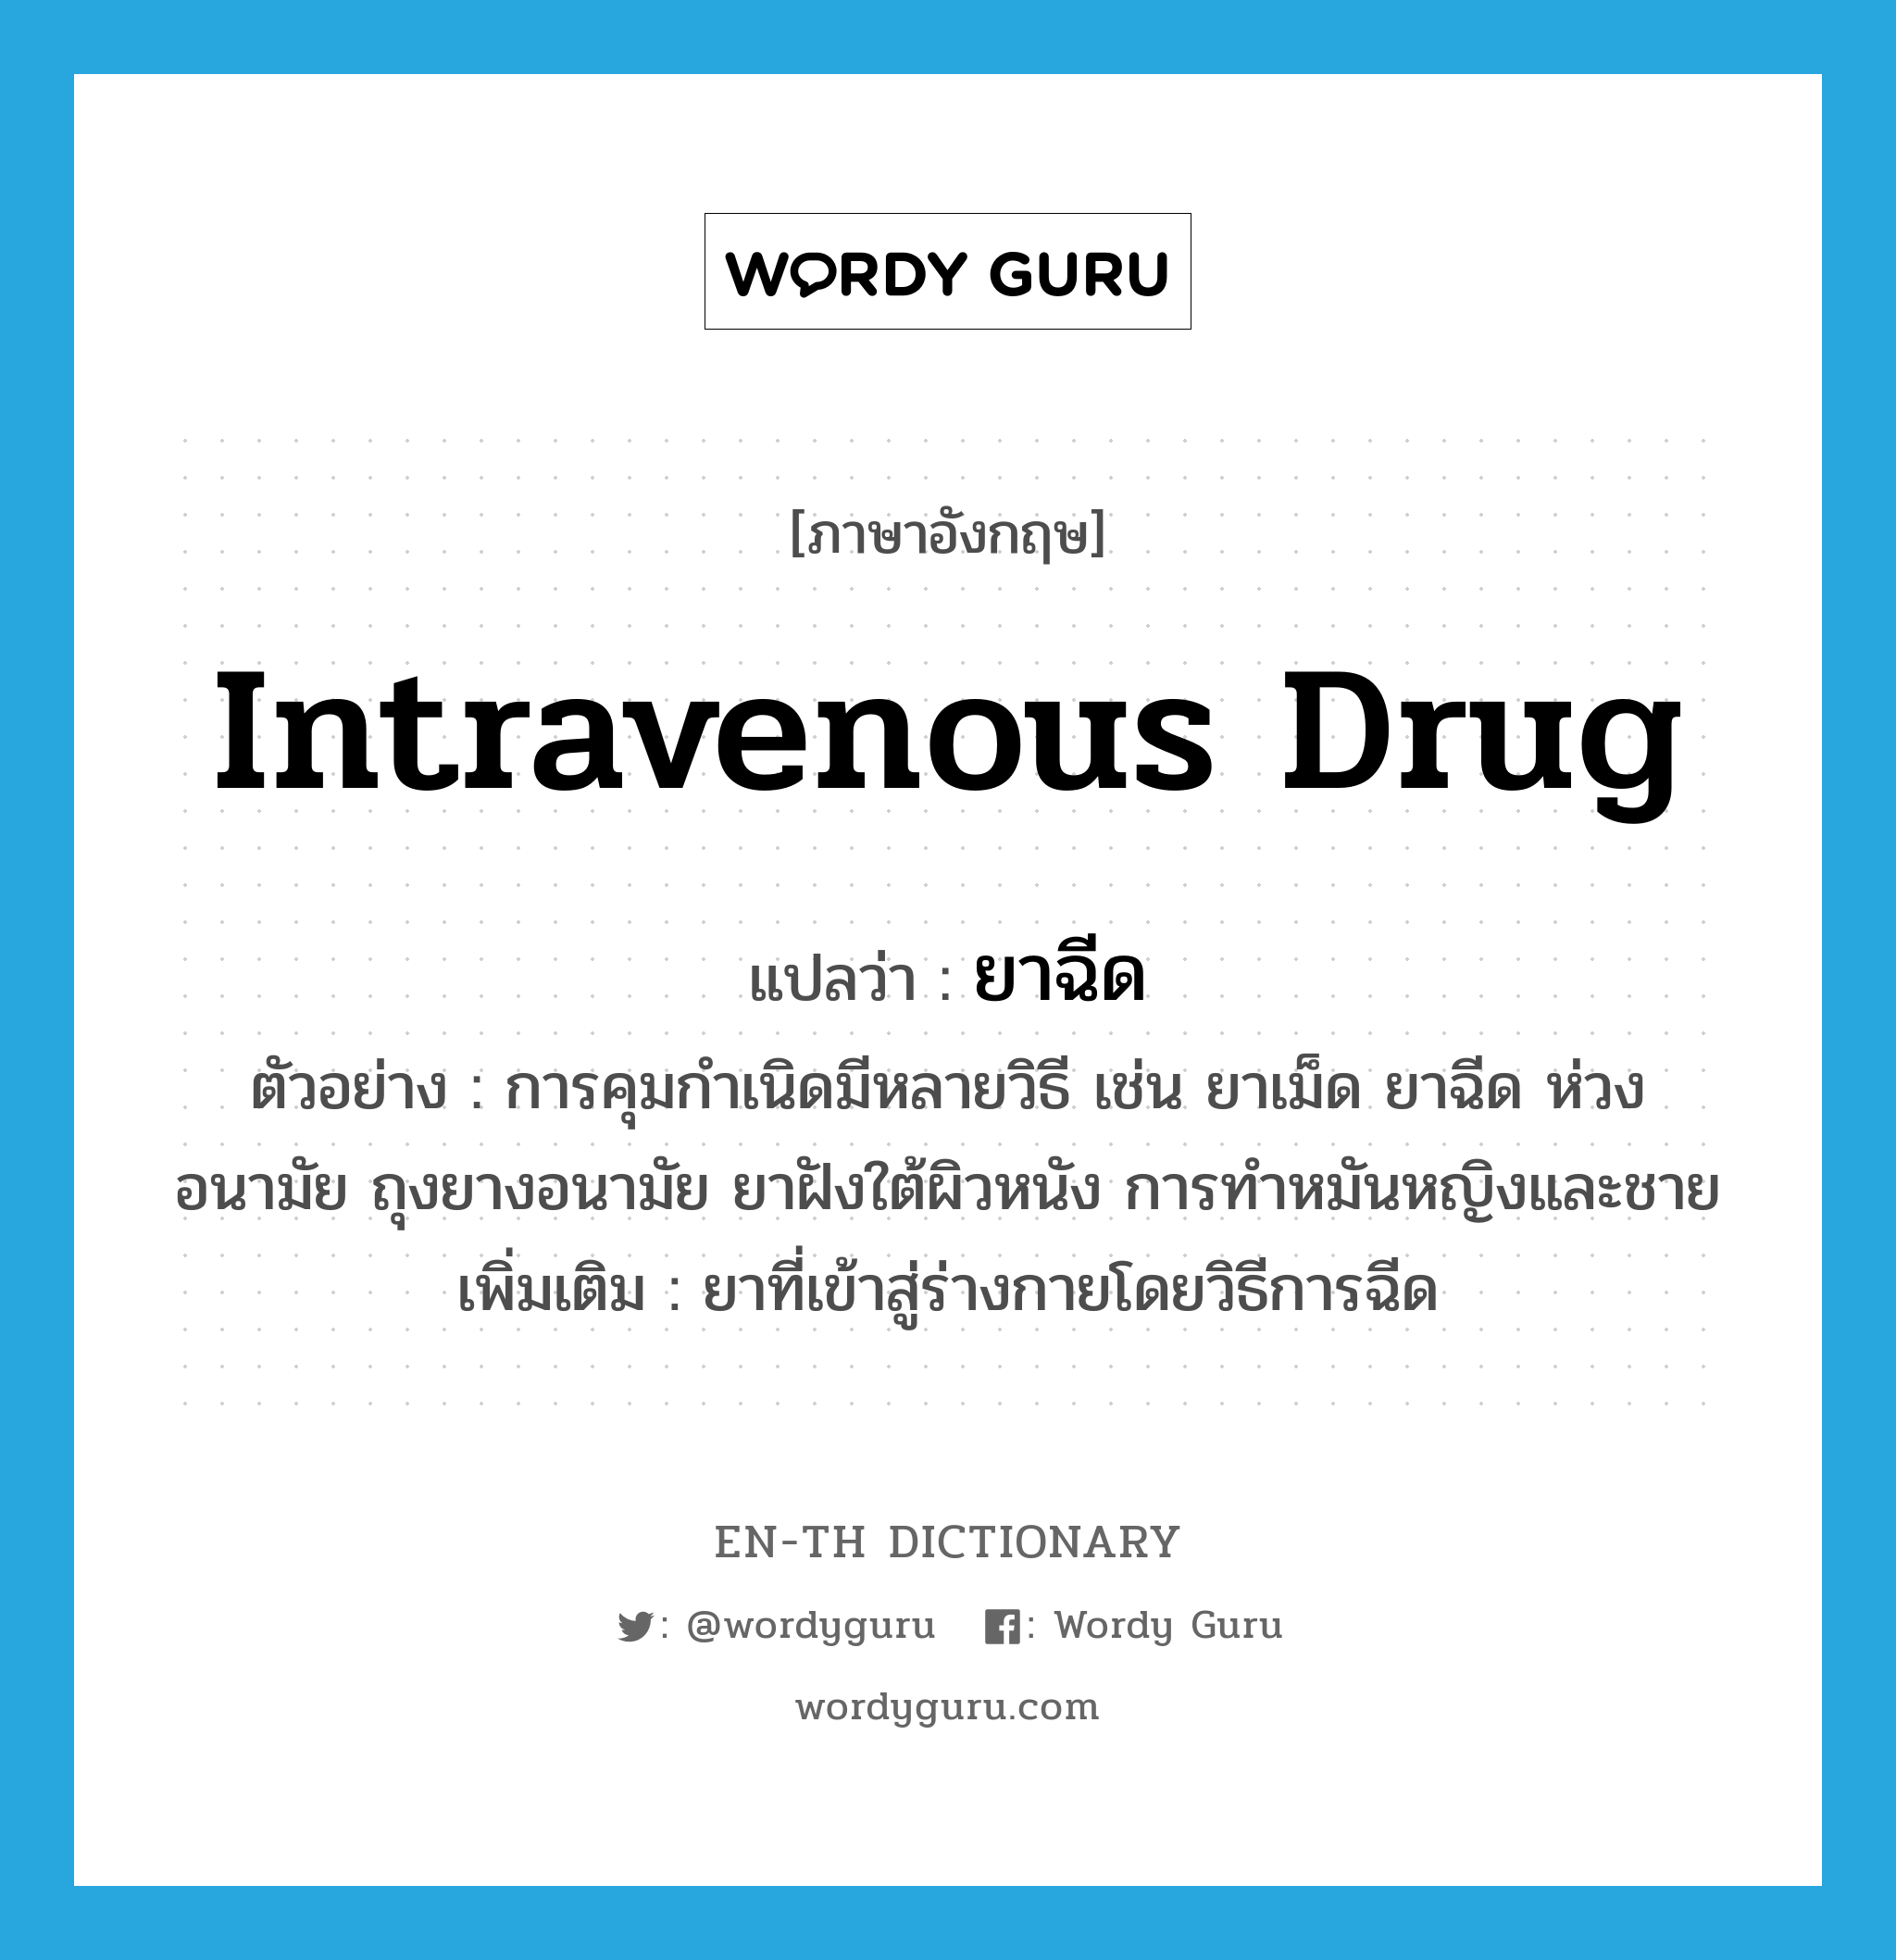 intravenous drug แปลว่า?, คำศัพท์ภาษาอังกฤษ intravenous drug แปลว่า ยาฉีด ประเภท N ตัวอย่าง การคุมกำเนิดมีหลายวิธี เช่น ยาเม็ด ยาฉีด ห่วงอนามัย ถุงยางอนามัย ยาฝังใต้ผิวหนัง การทำหมันหญิงและชาย เพิ่มเติม ยาที่เข้าสู่ร่างกายโดยวิธีการฉีด หมวด N